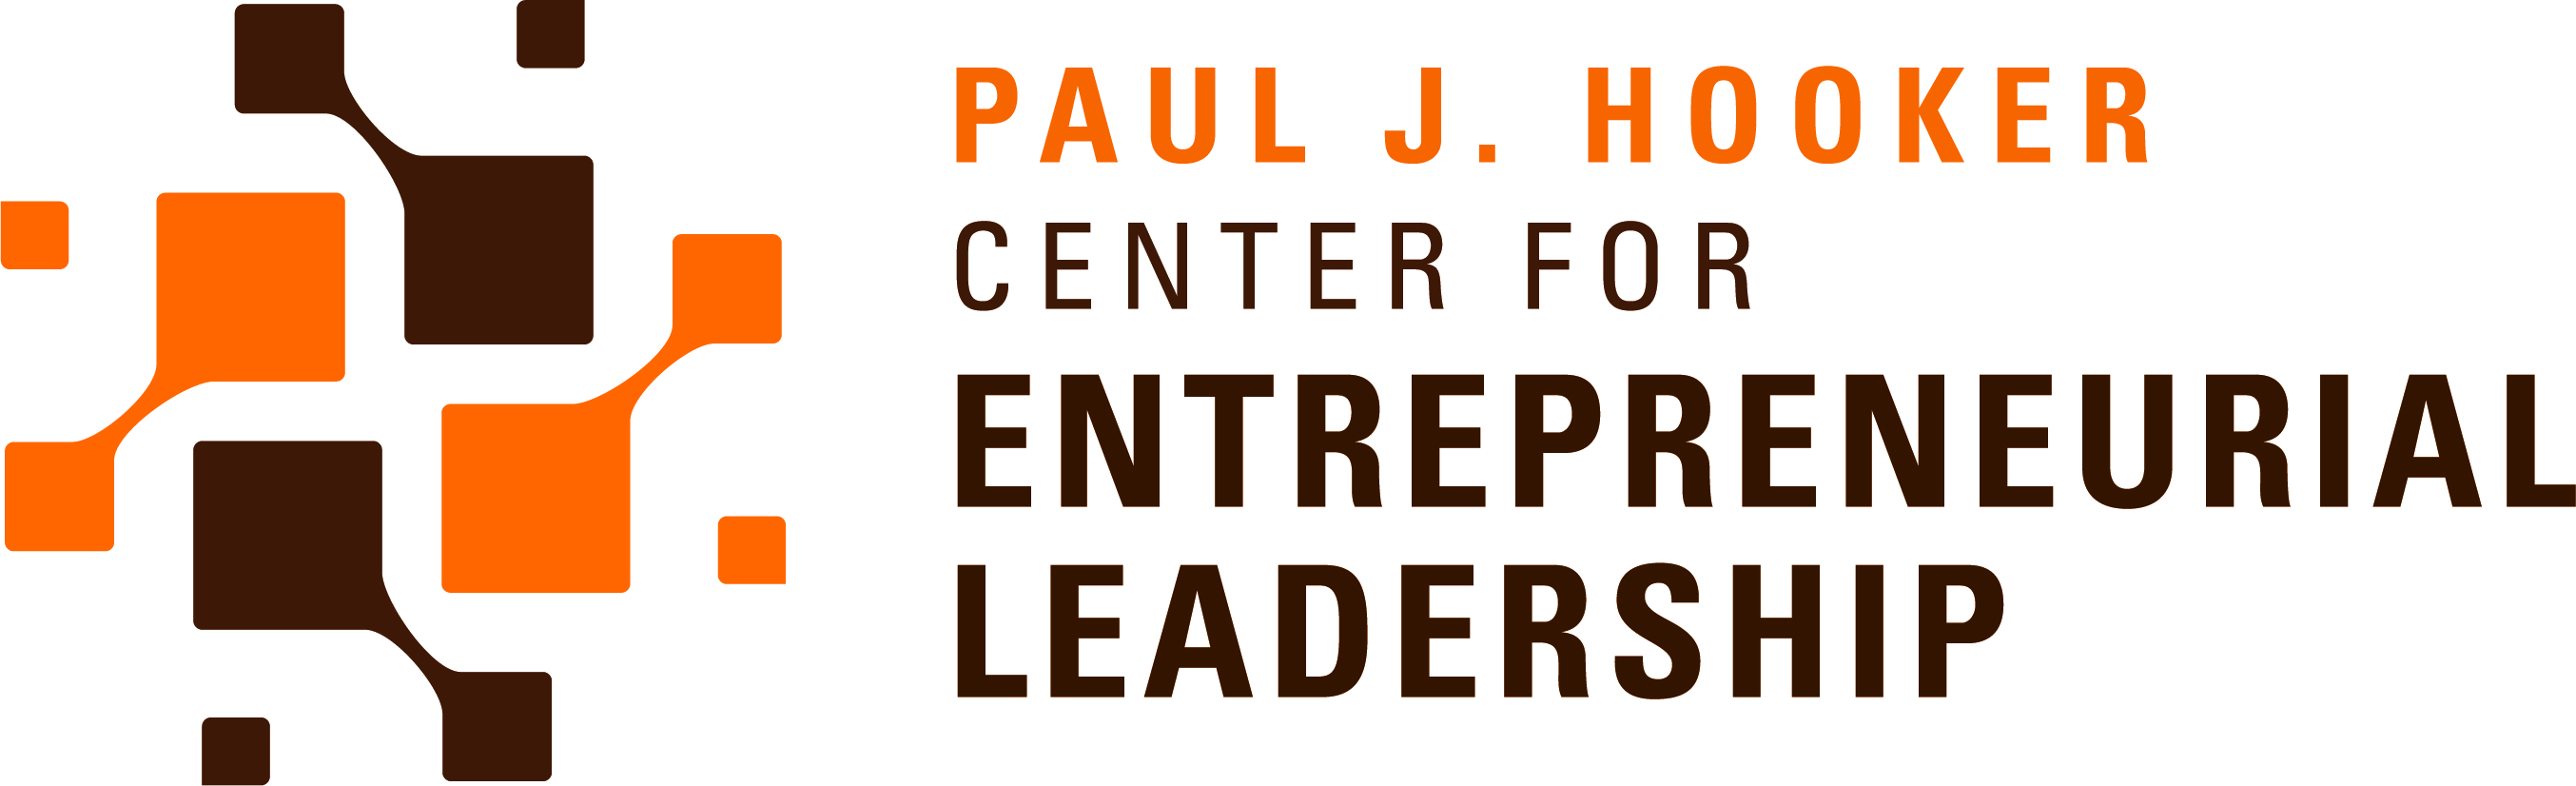 Paul J. Hooker Center for Entrepreneurial Leadership Logo